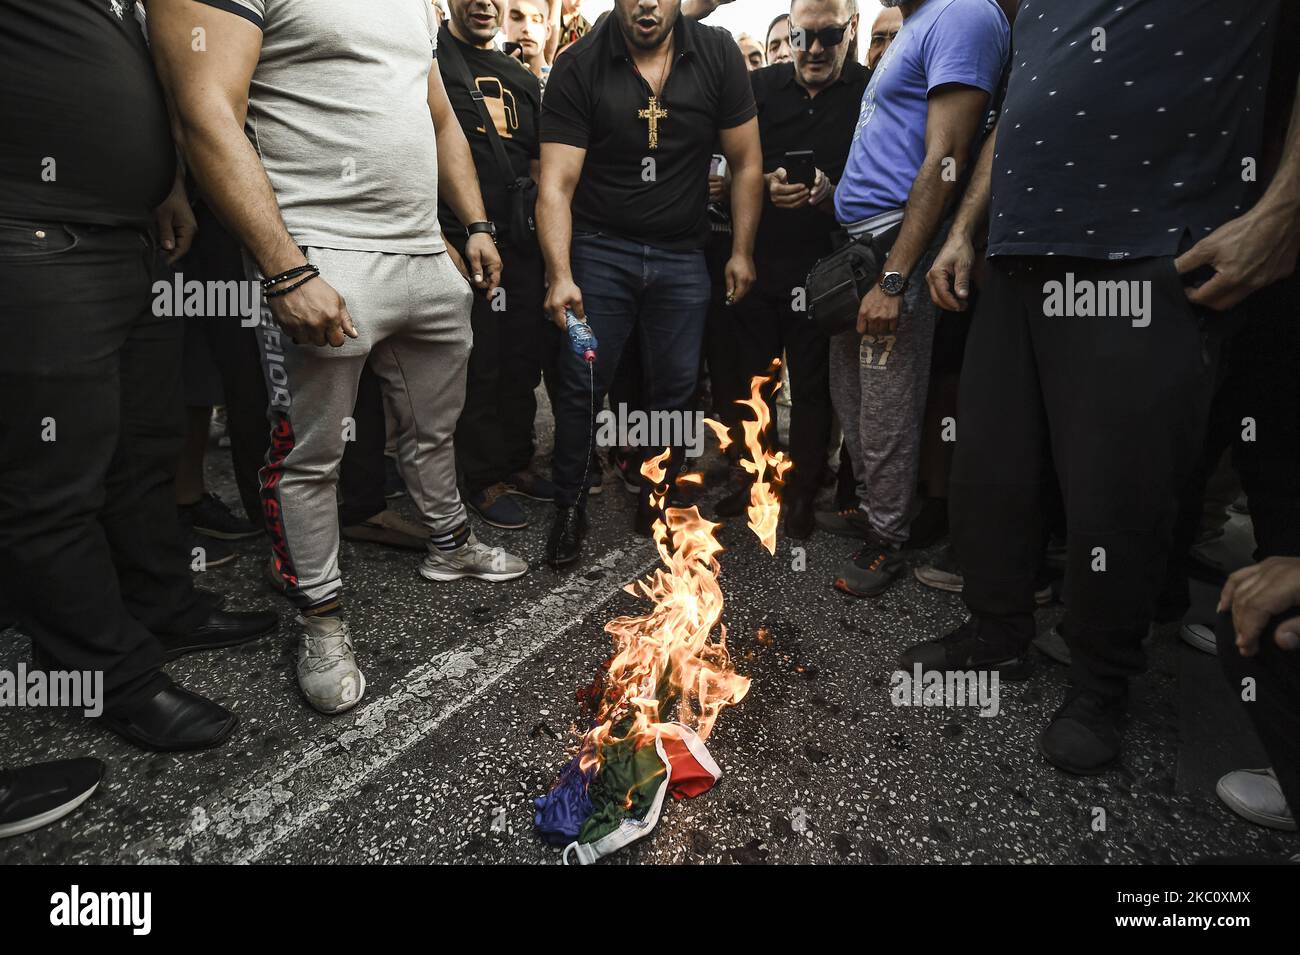 Gli armeni che vivono in Grecia, bruciano una bandiera dell'Azerbaigian durante un raduno ad Atene, mercoledì 30 settembre 2020. I manifestanti pro-armeni hanno bruciato una bandiera dell'Azerbaigian durante una manifestazione al di fuori del parlamento greco mercoledì, mentre il governo greco si è offerto di aiutare gli sforzi di mediazione volti a porre fine ai combattimenti sul territorio separatista del Nagorno-Karabakh. (Foto di Dimitris Lampropoulos/NurPhoto) Foto Stock